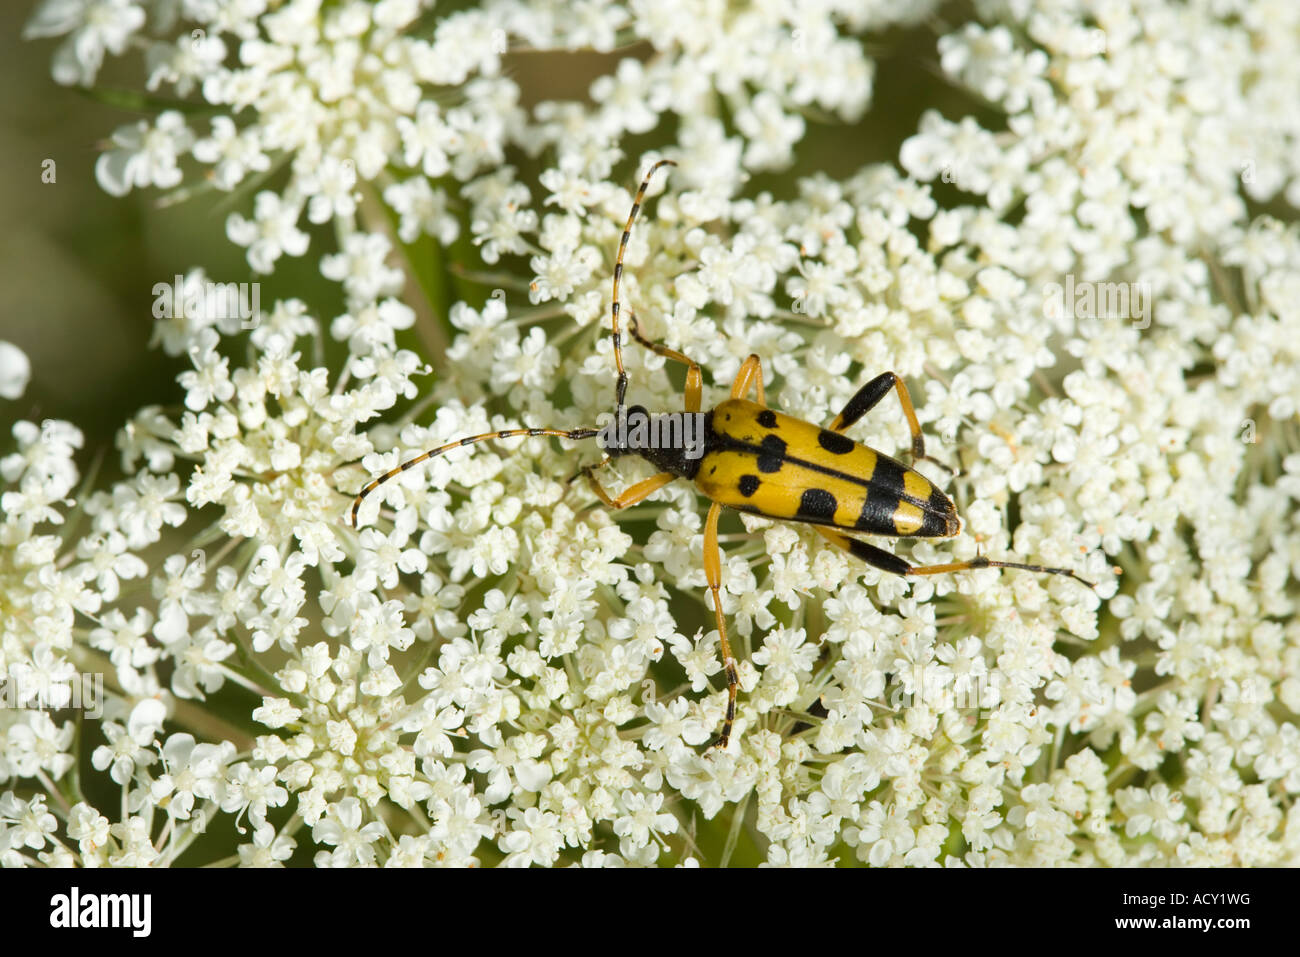 Strangalia Maculata, eine Art von Longhorn Beetle auf Wilde Möhre Blume Stockfoto